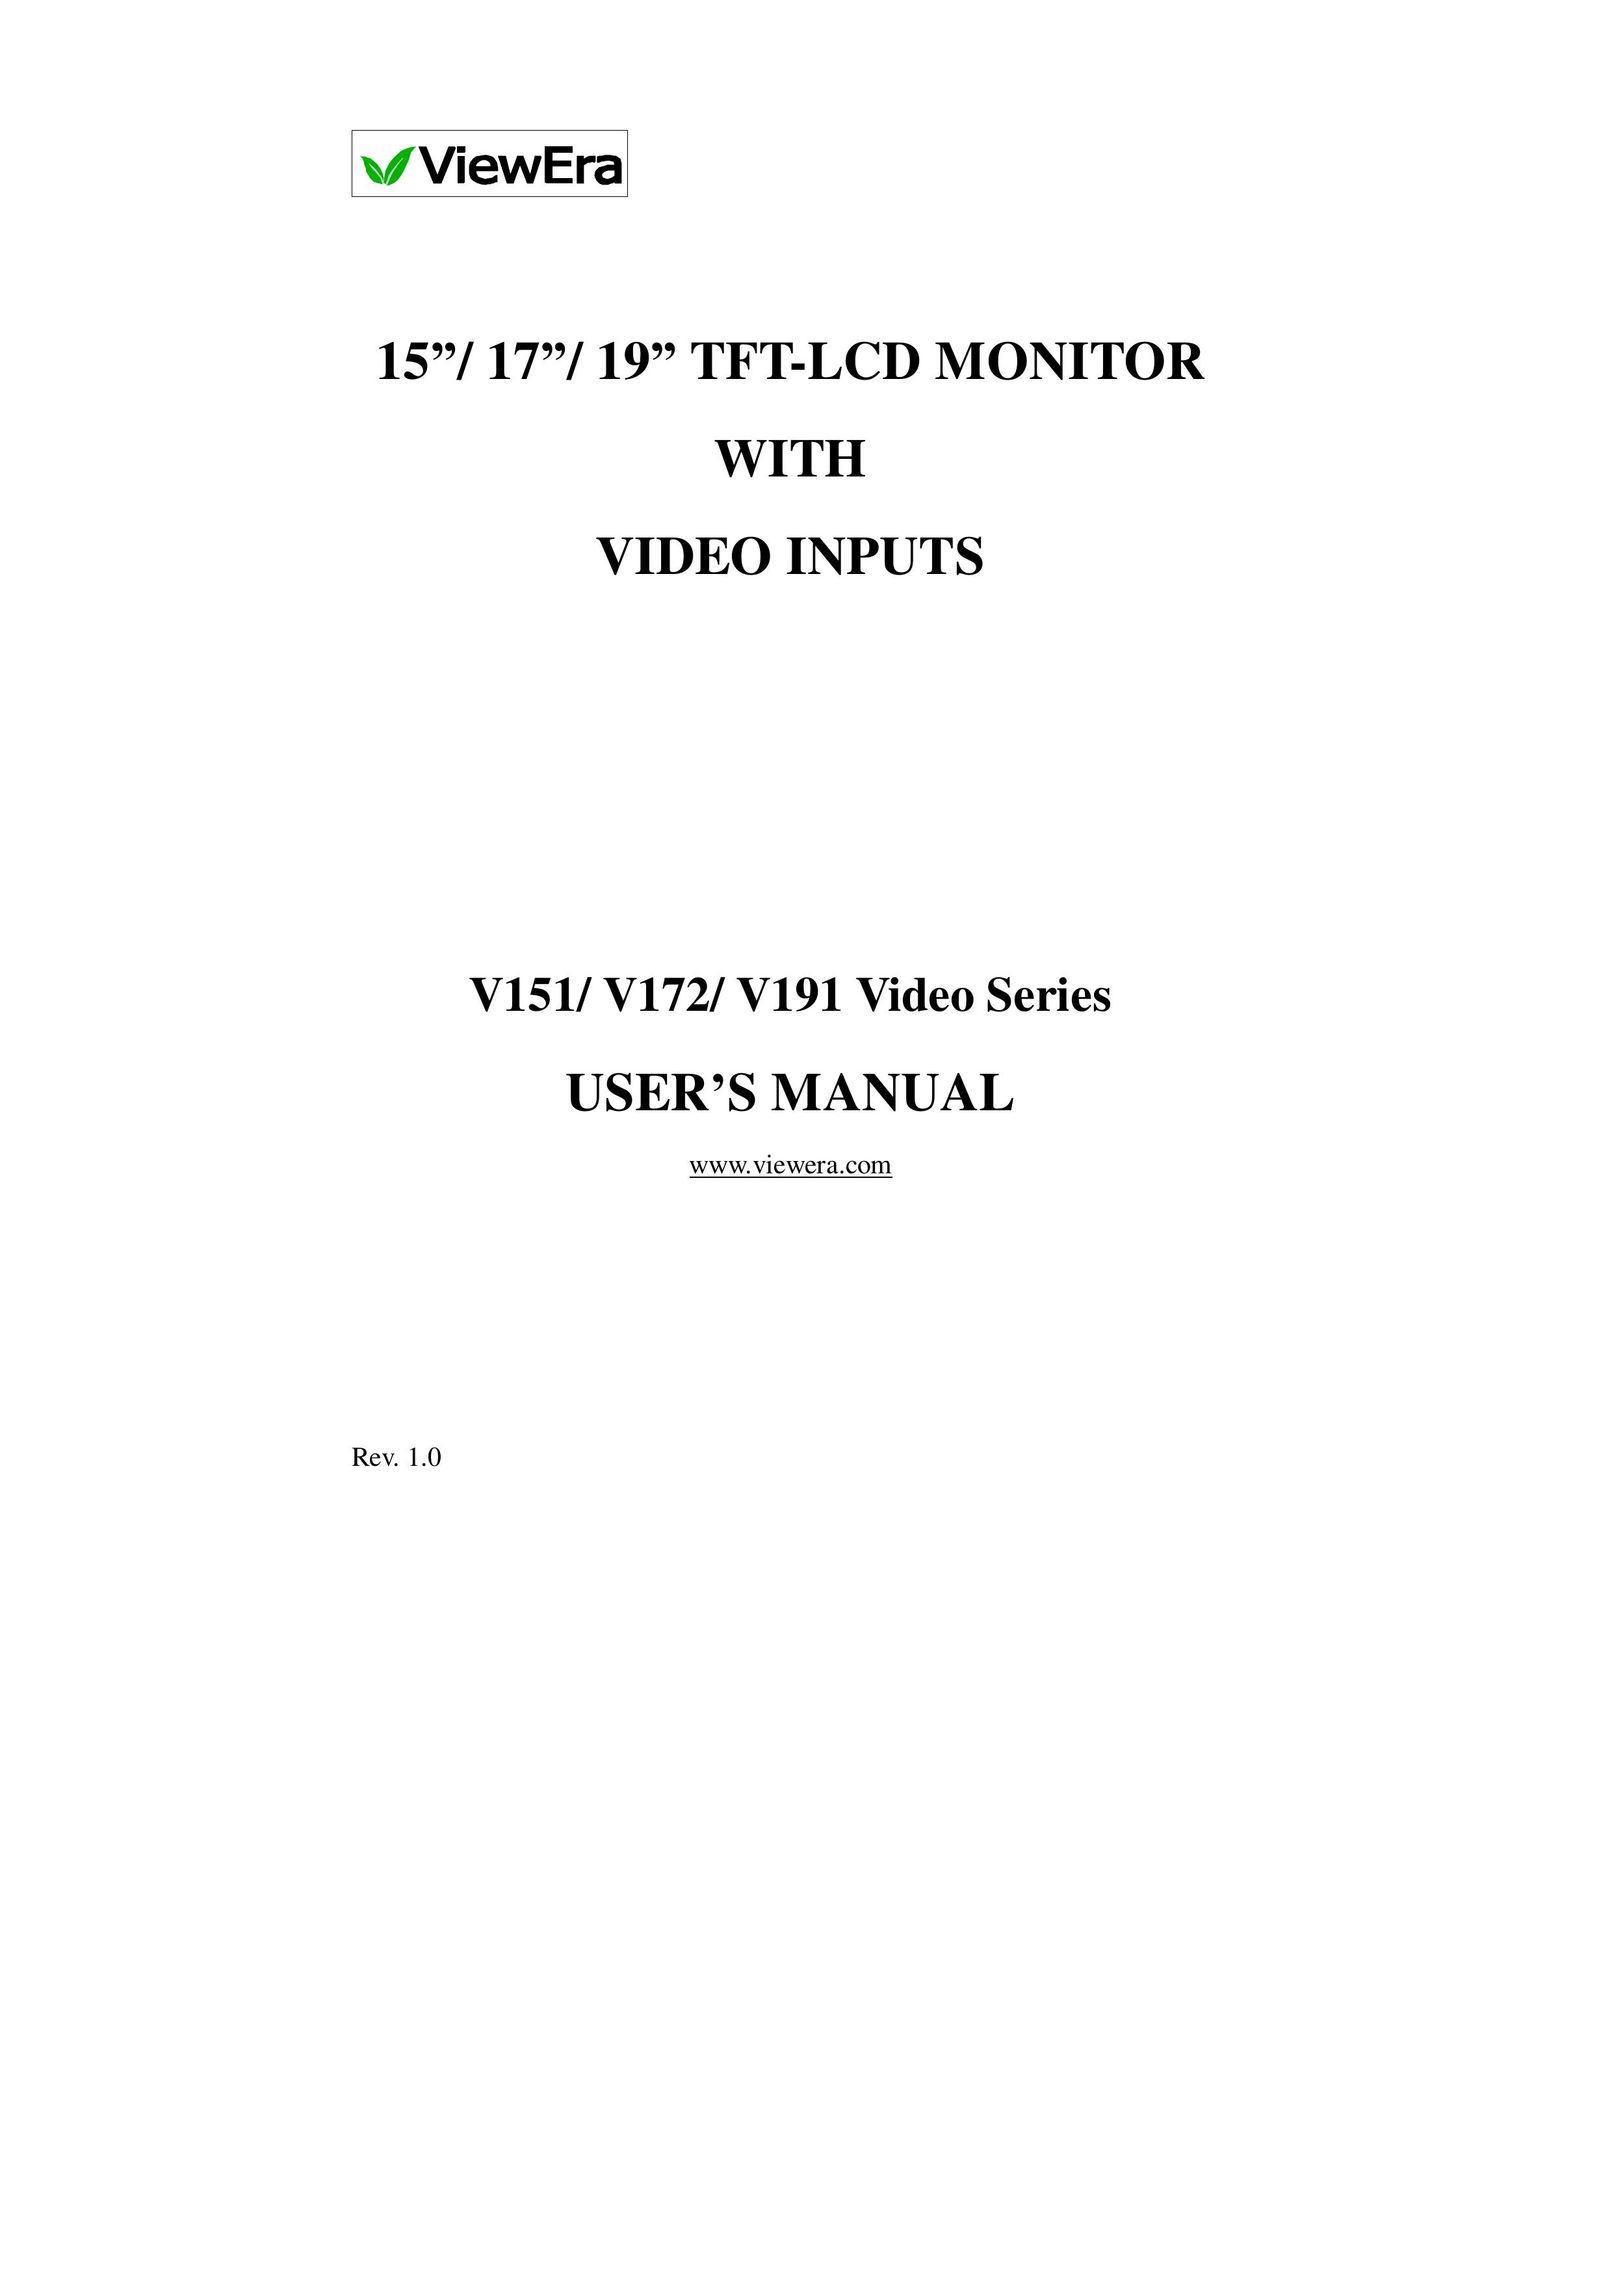 ViewEra V172 Series Computer Monitor User Manual